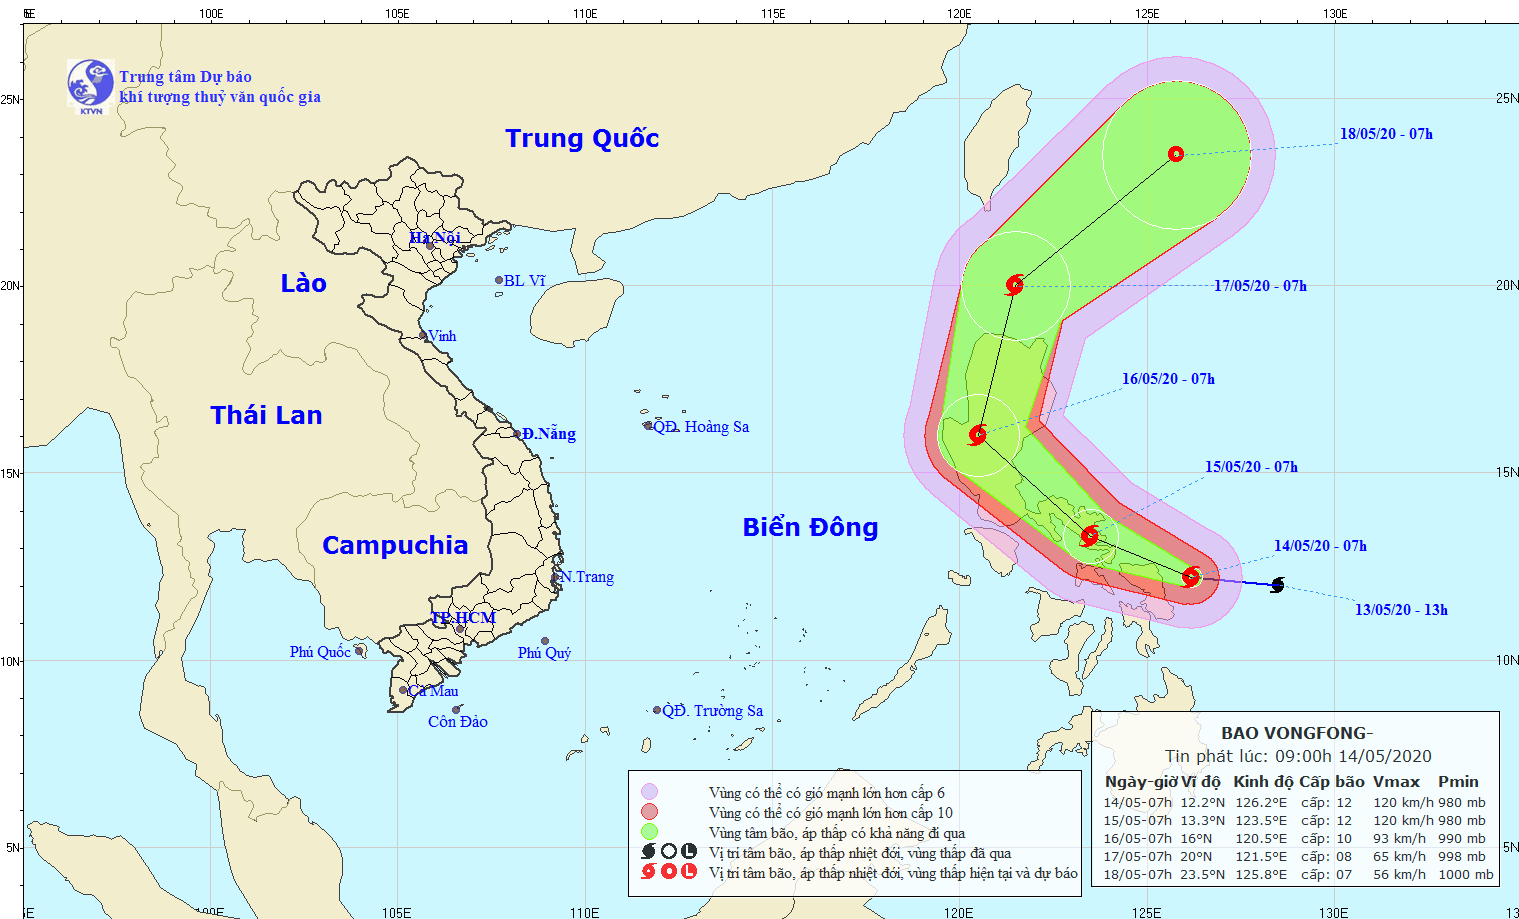 Nắng nóng gay gắt khắp cả nước, bão VongFong diễn biến phức tạp - Ảnh 2.